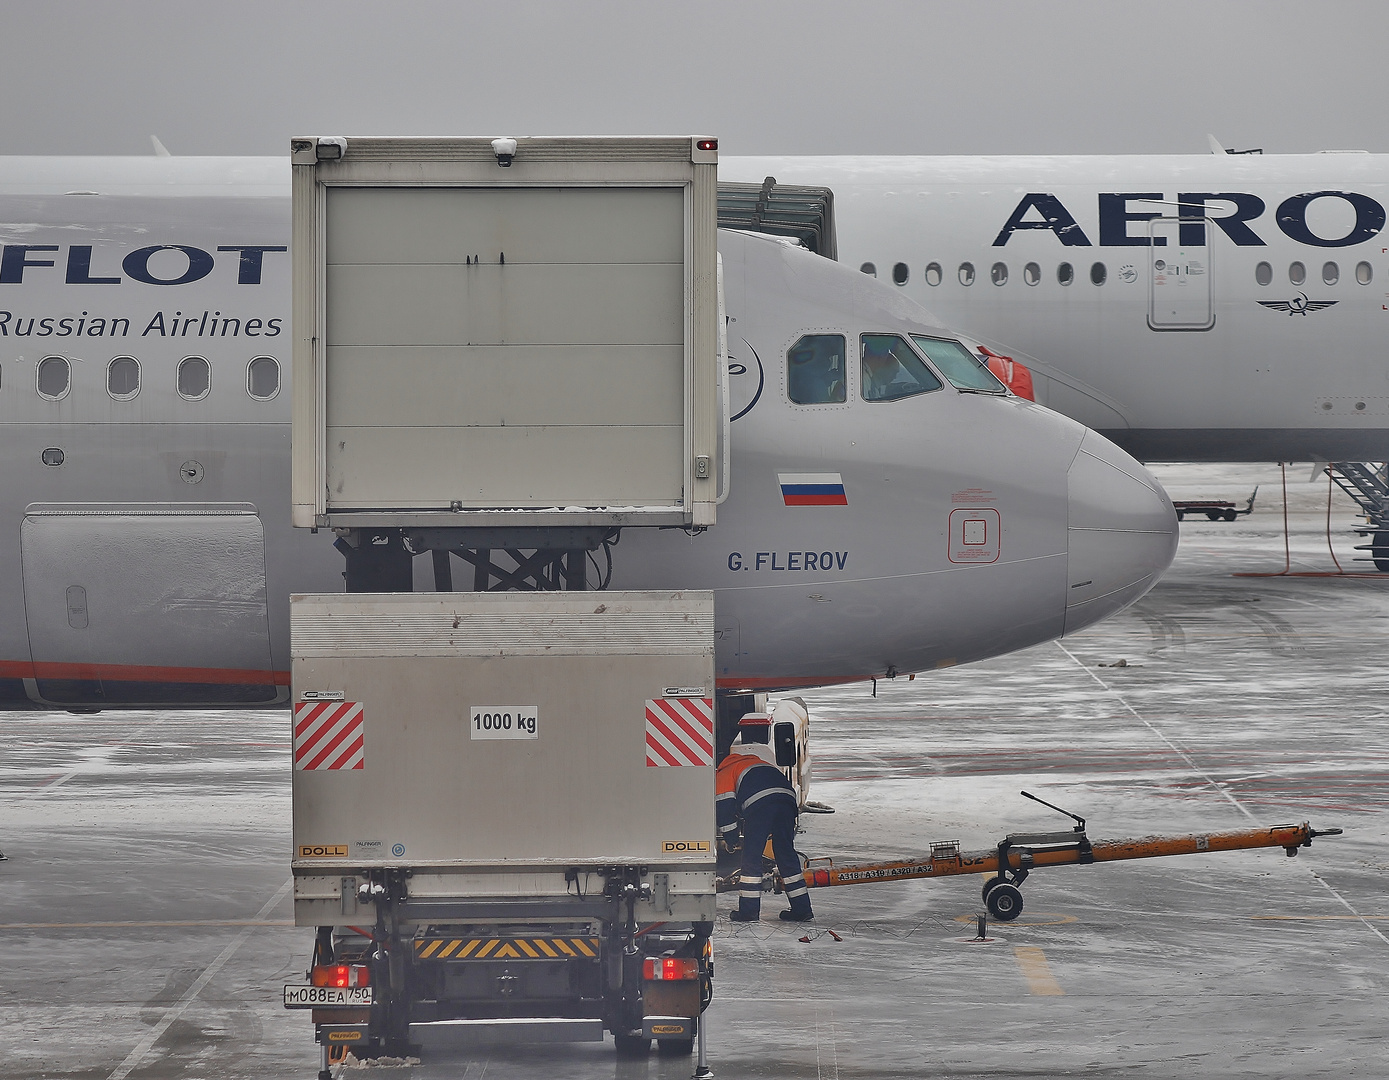 AERO+FLOT= Aeroflot